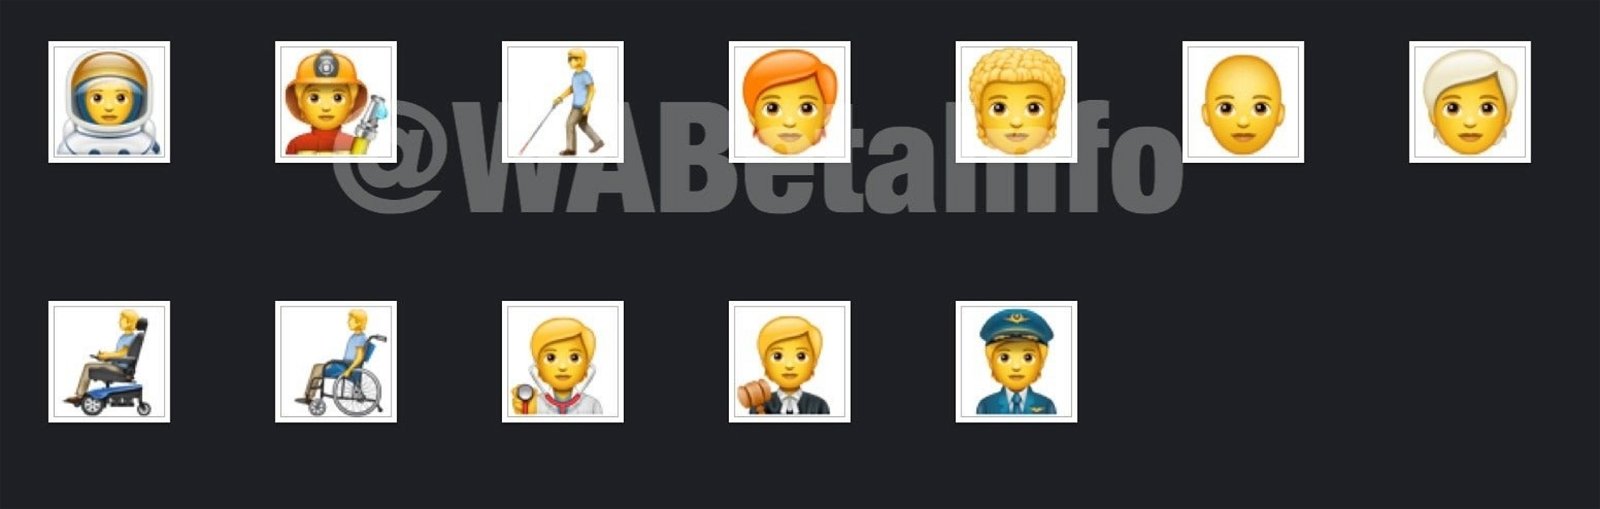 Los 138 nuevos emojis que llegan a WhatsApp